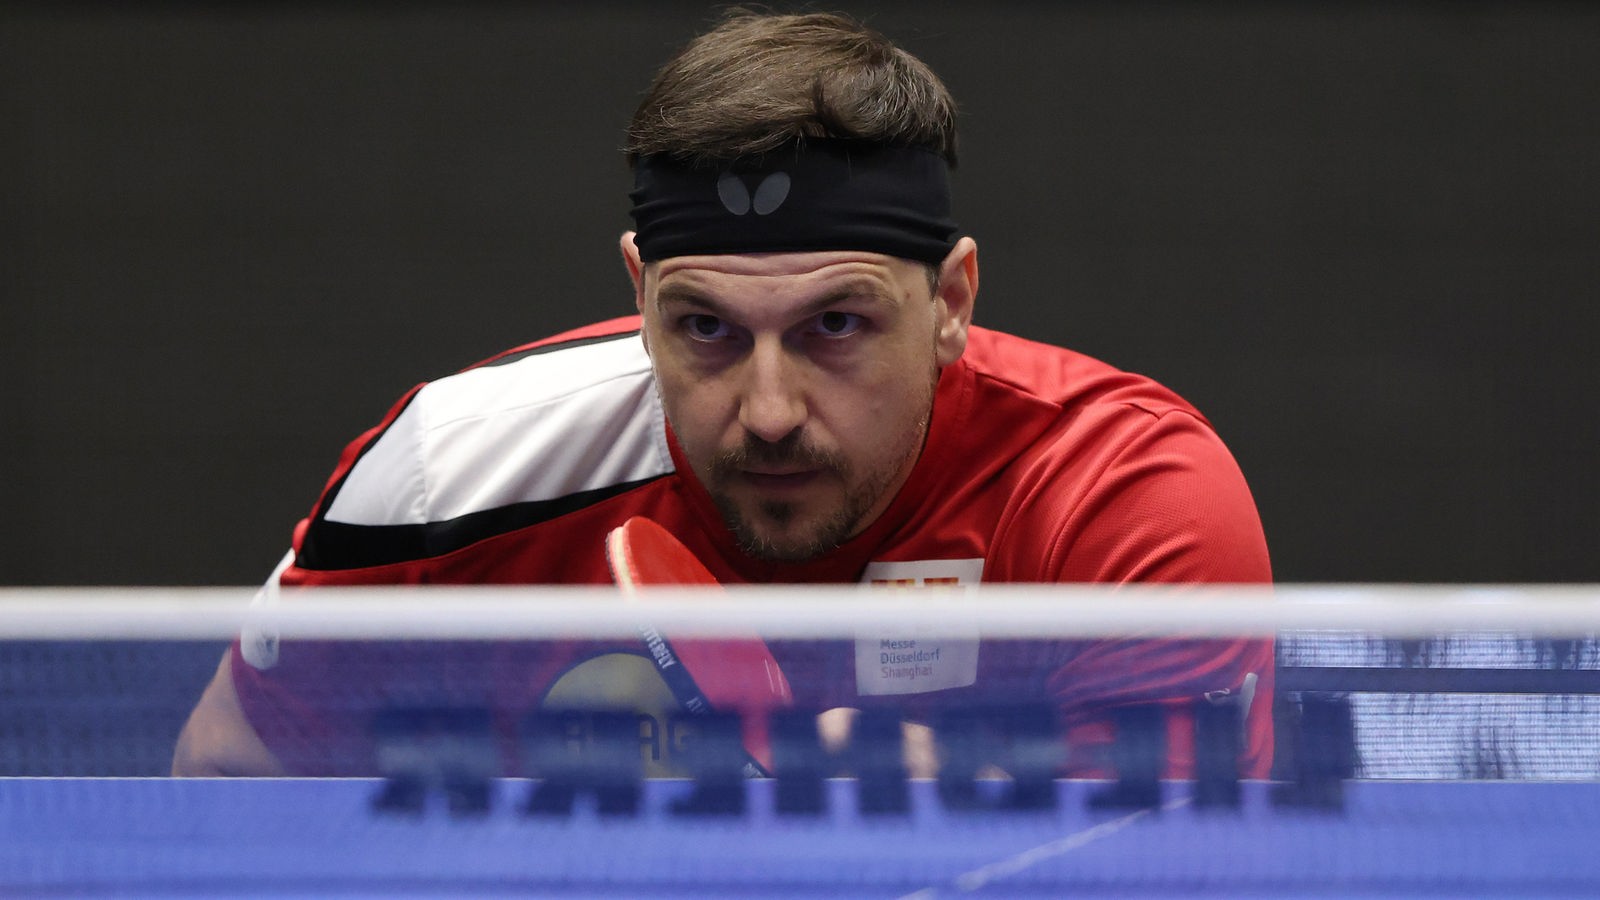 Tischtennis Timo Boll schaltet nach Comeback einen Gang zurück - Tischtennis - Sport